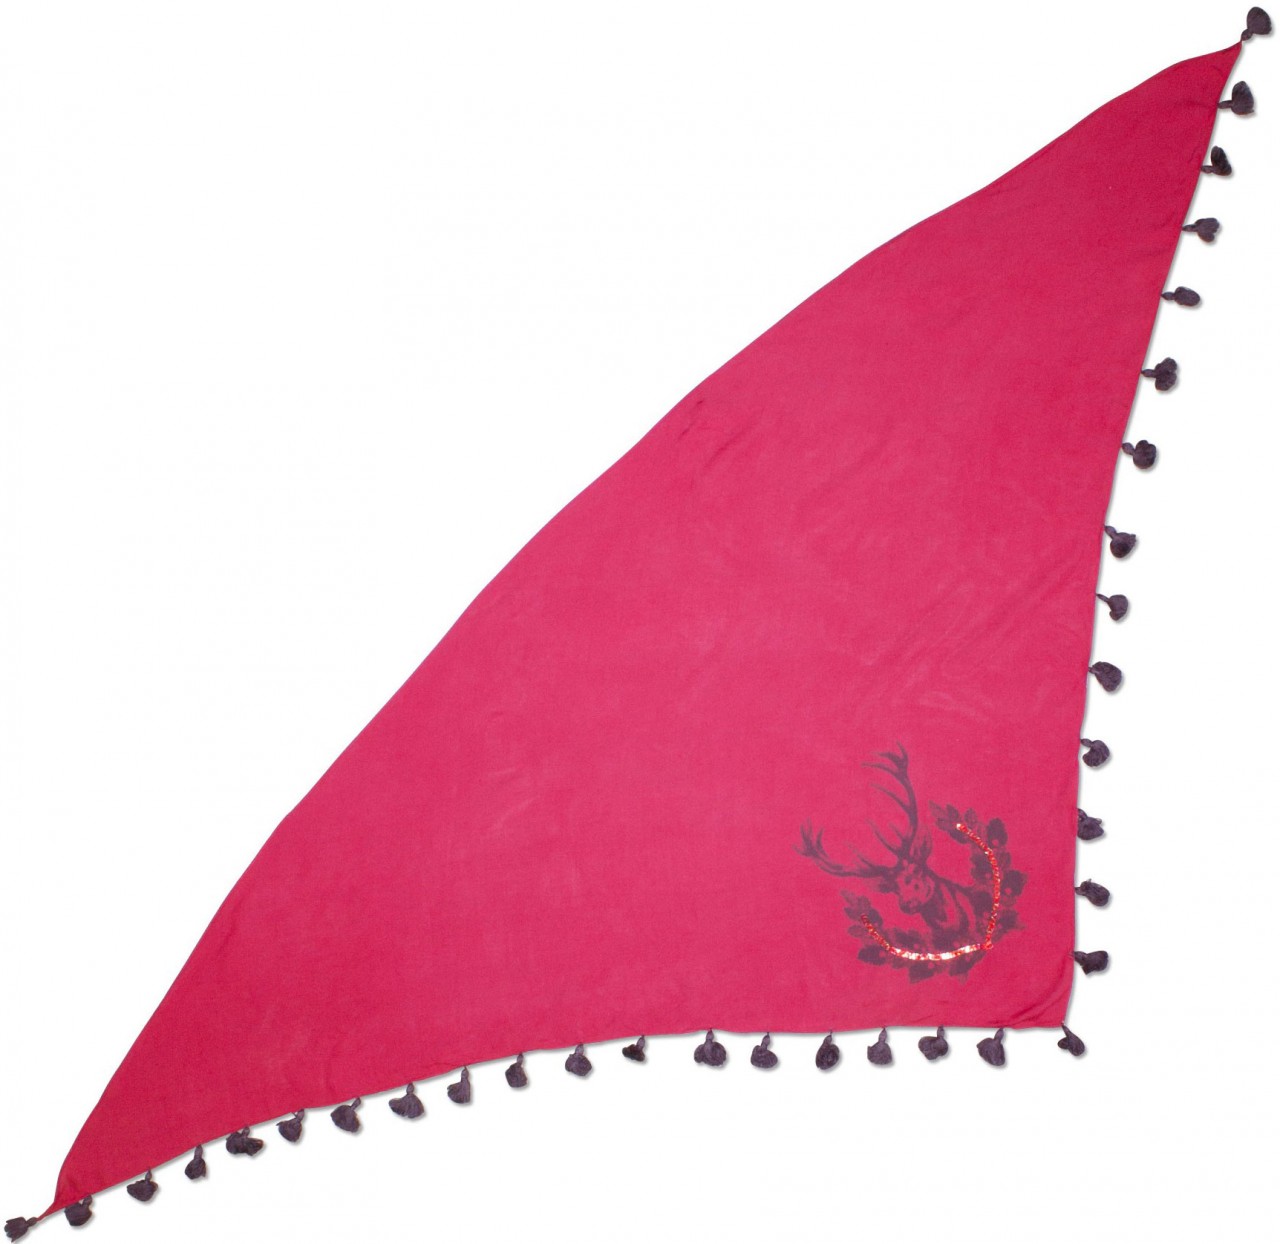 Voorvertoning: Driehoek traditionele doek herten roze